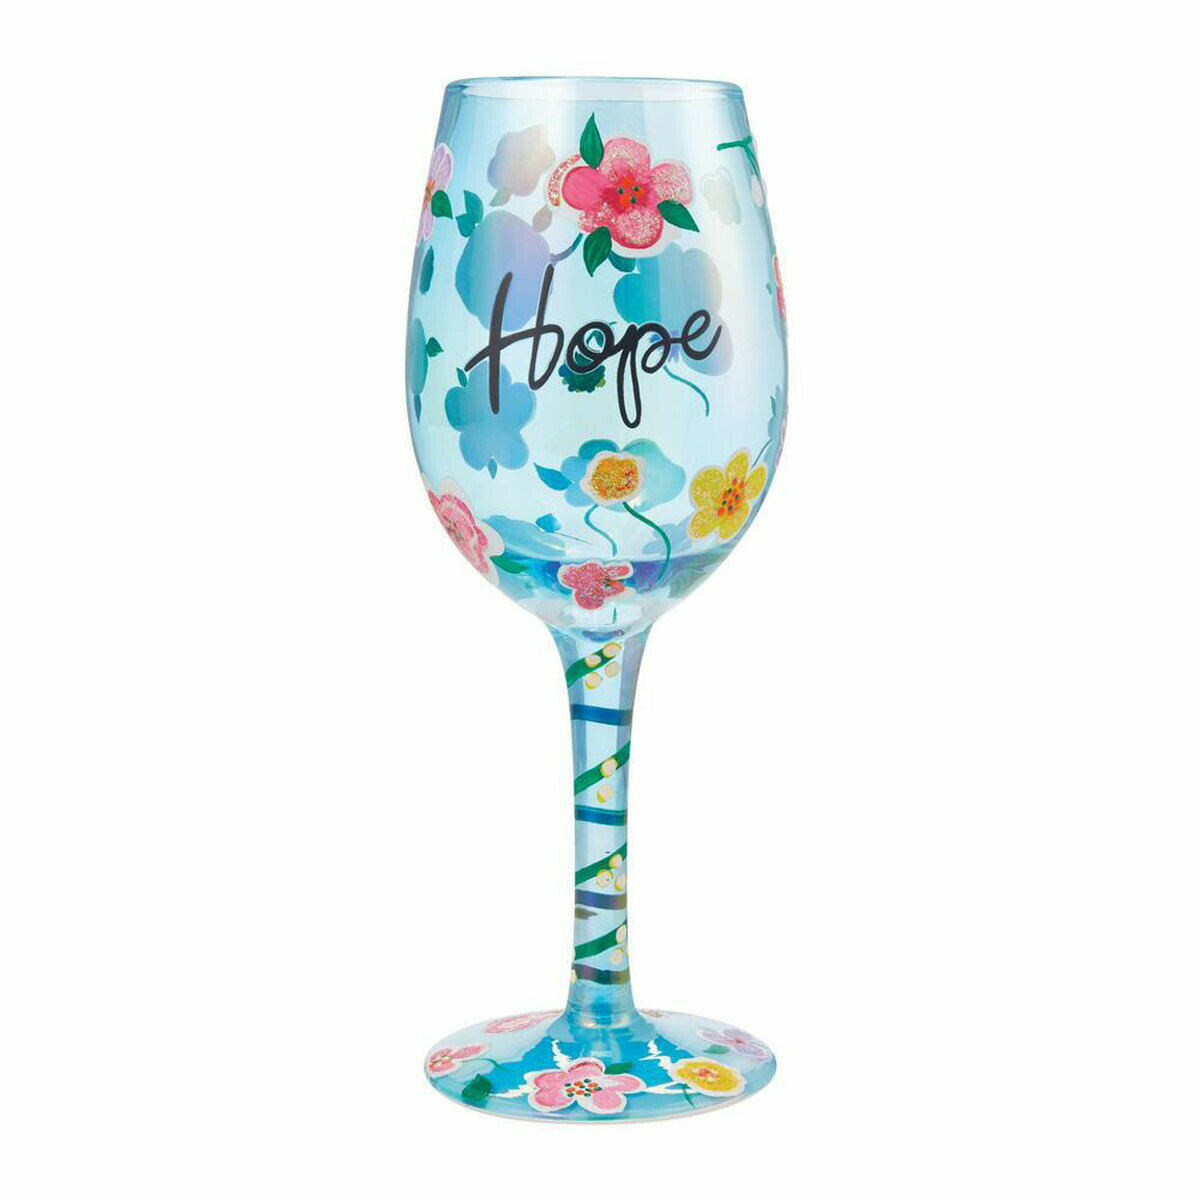 ロリータ LOLITA グラス ワイングラス 6009229 HOPE ホープ 希望 ブルー系 花 おしゃれ ブランド 新品